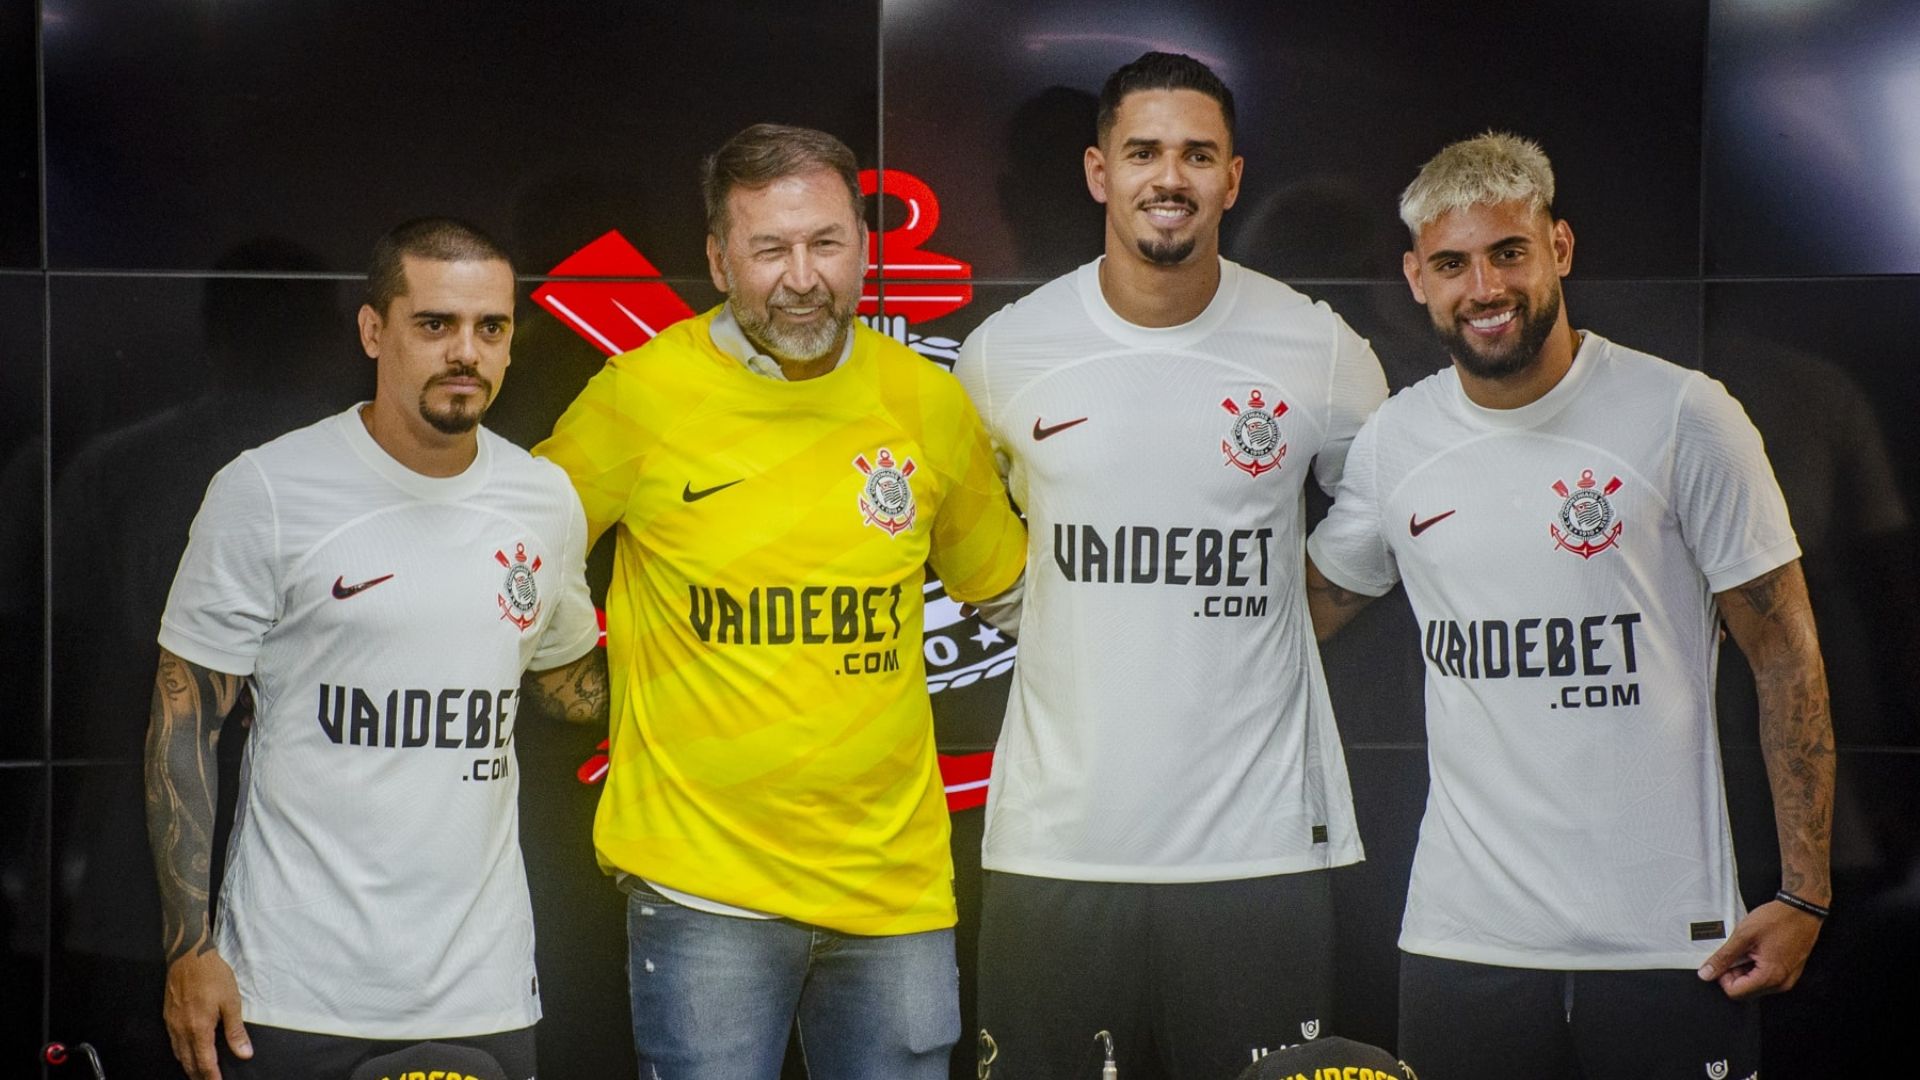 Jogadores do Corinthians na apresentação da 'VaideBet' como patrocinadora (Crédito: Jozzu / Agência Corinthians)